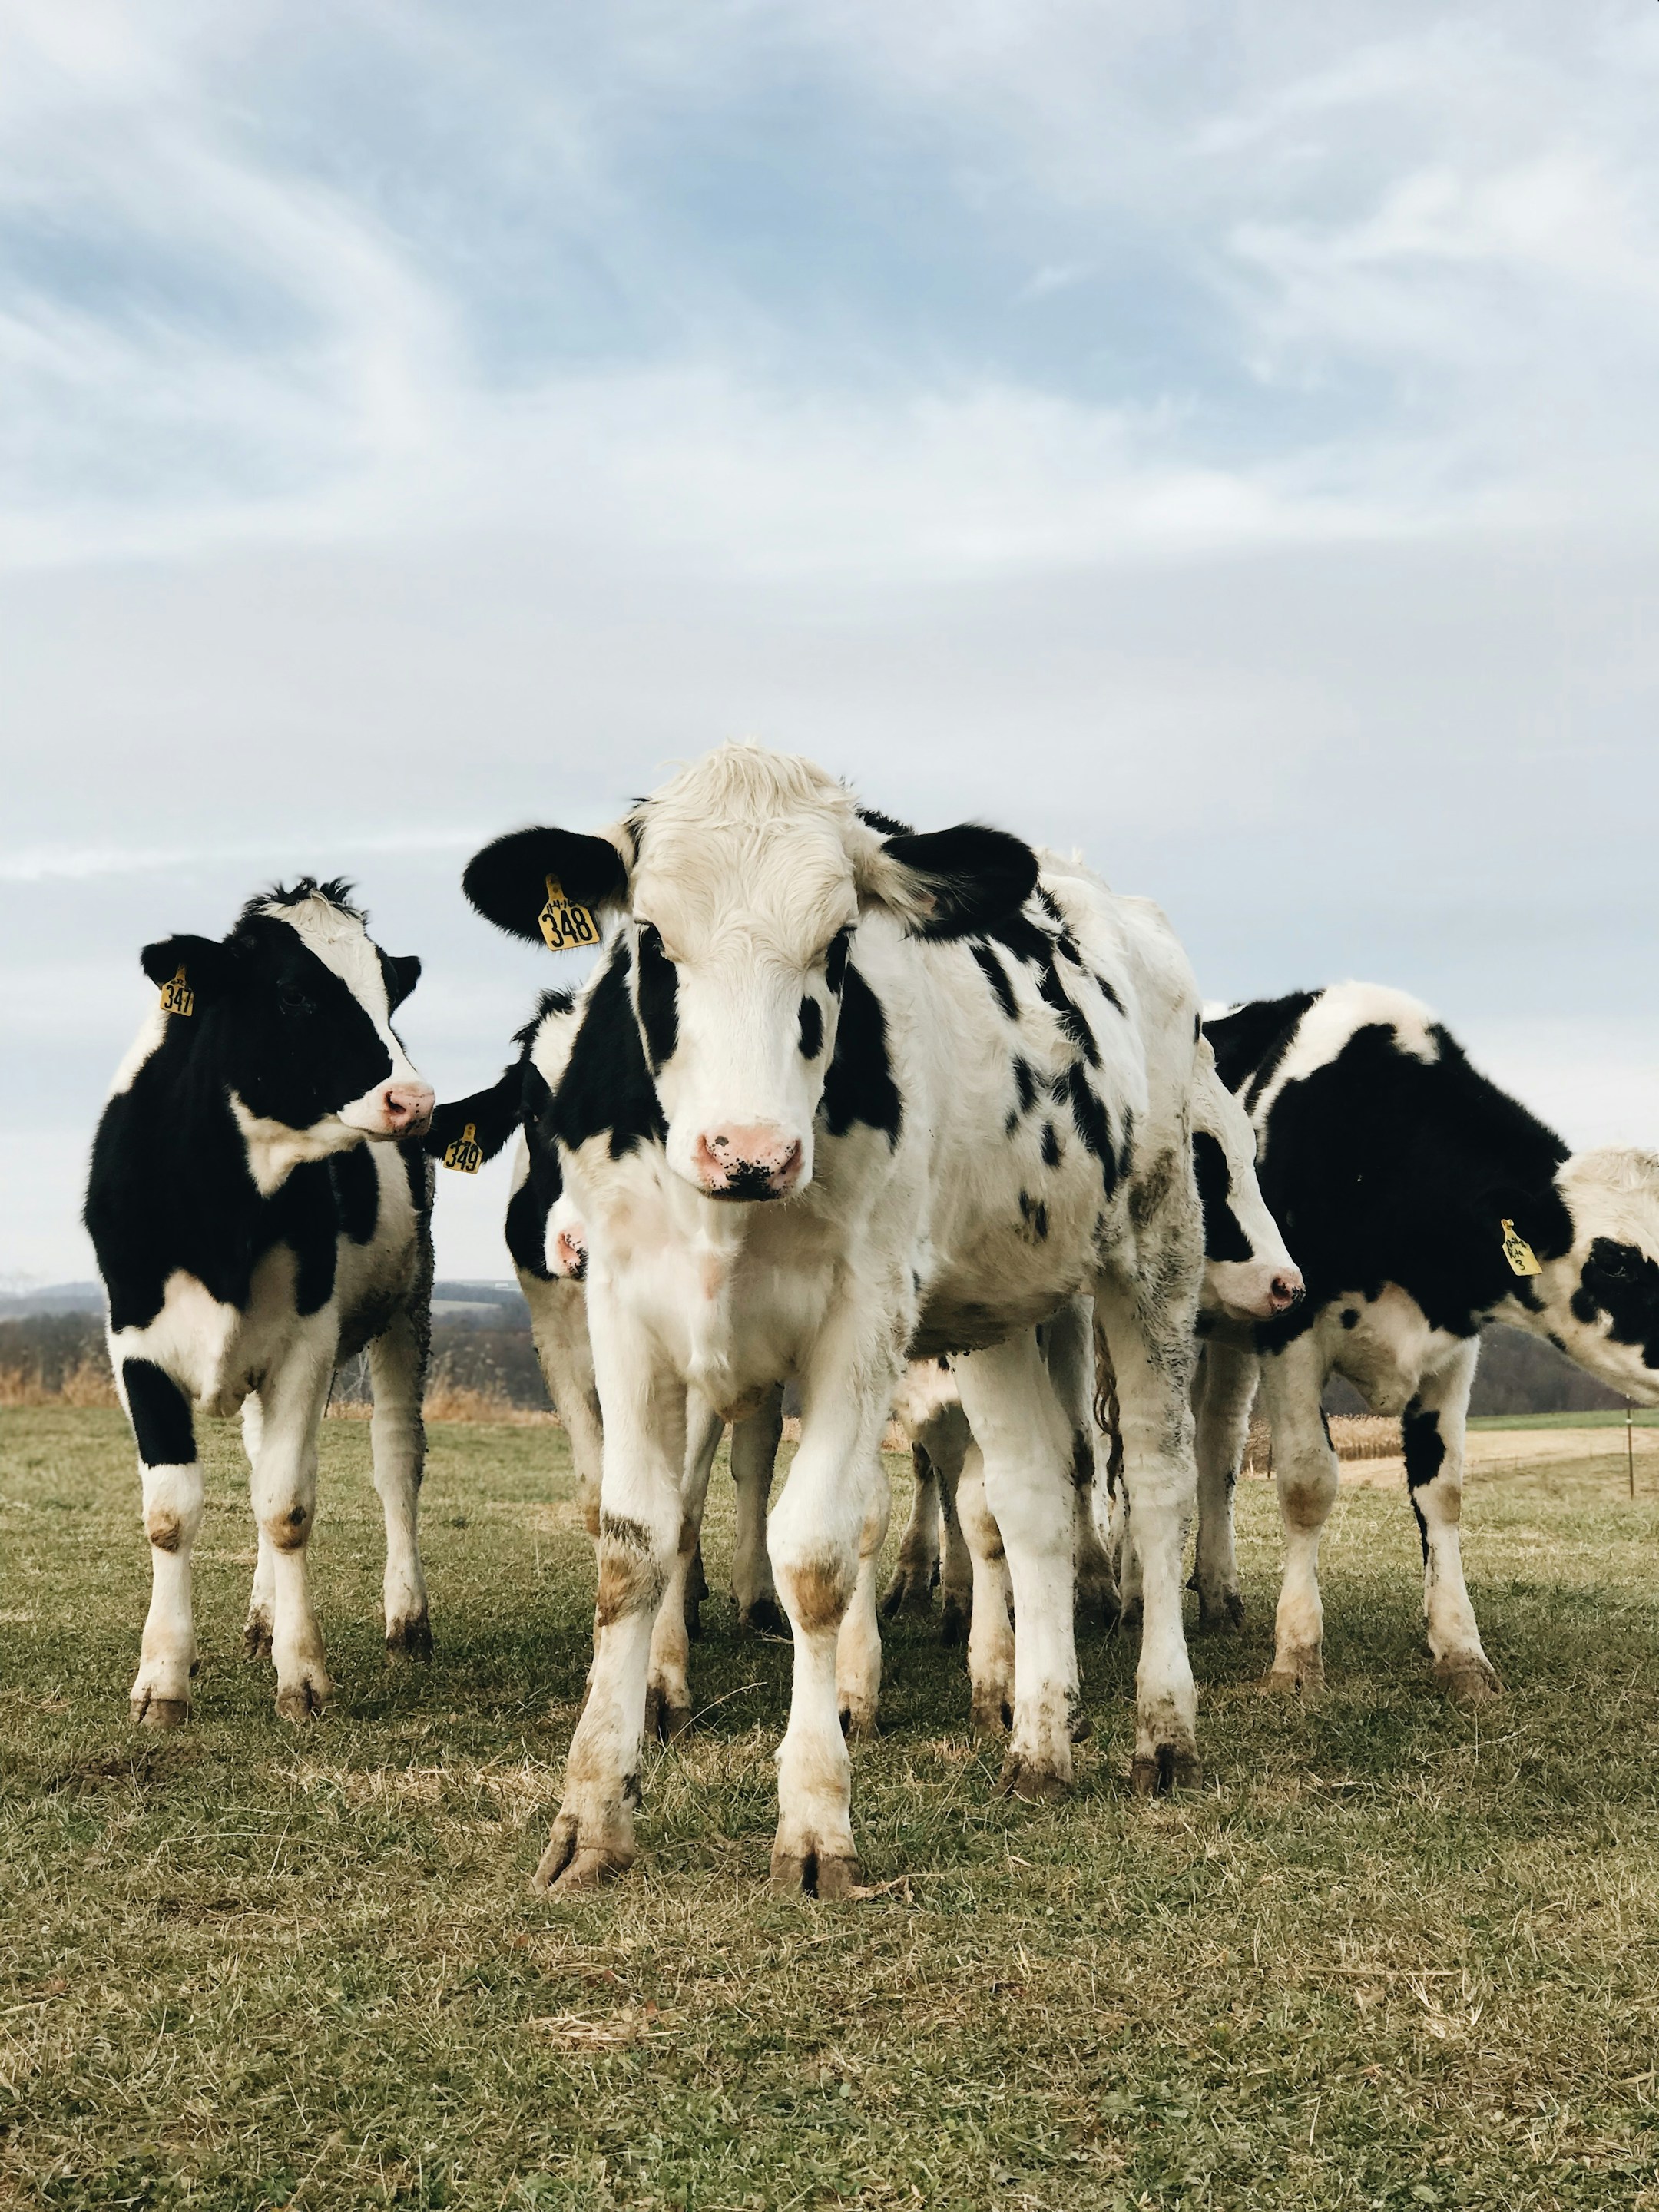 इन पांच तरीकों से बढ़ाएं दुधारू पशुओं का दूध उत्पादन क्षमता